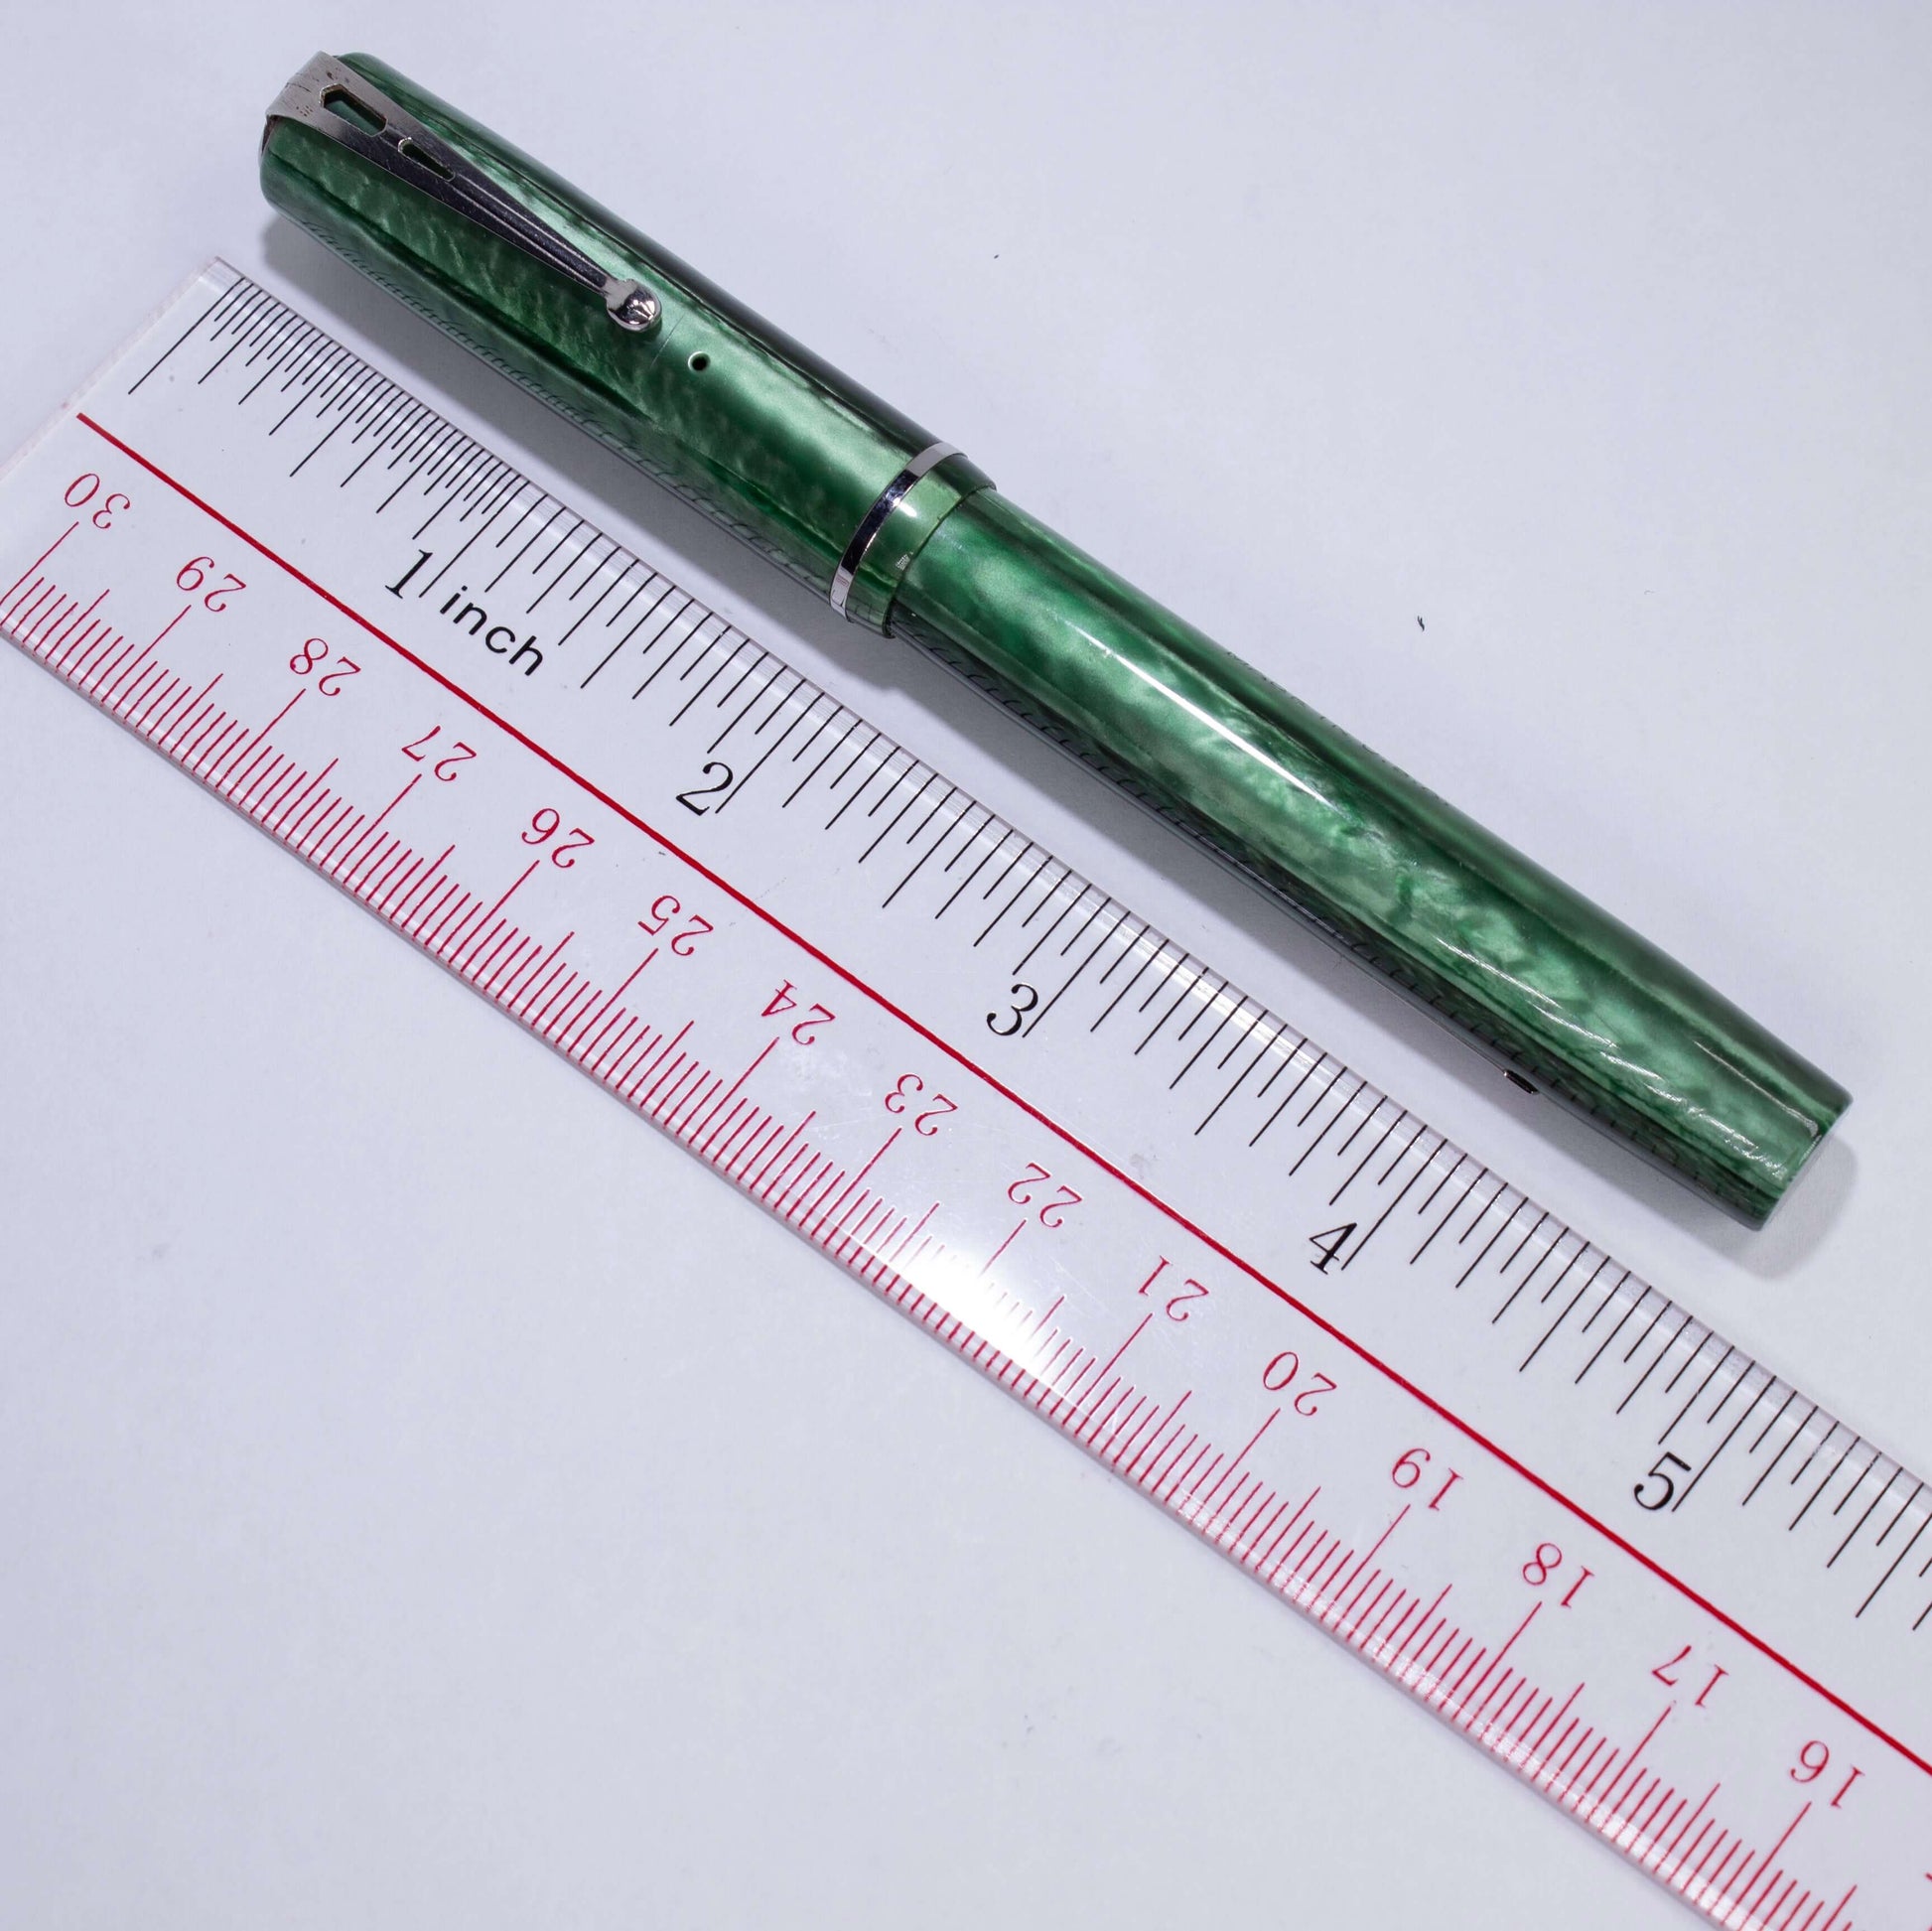 Esterbrook Dollar Pen, Foliage Green, Restored. #2668 Med. Nib